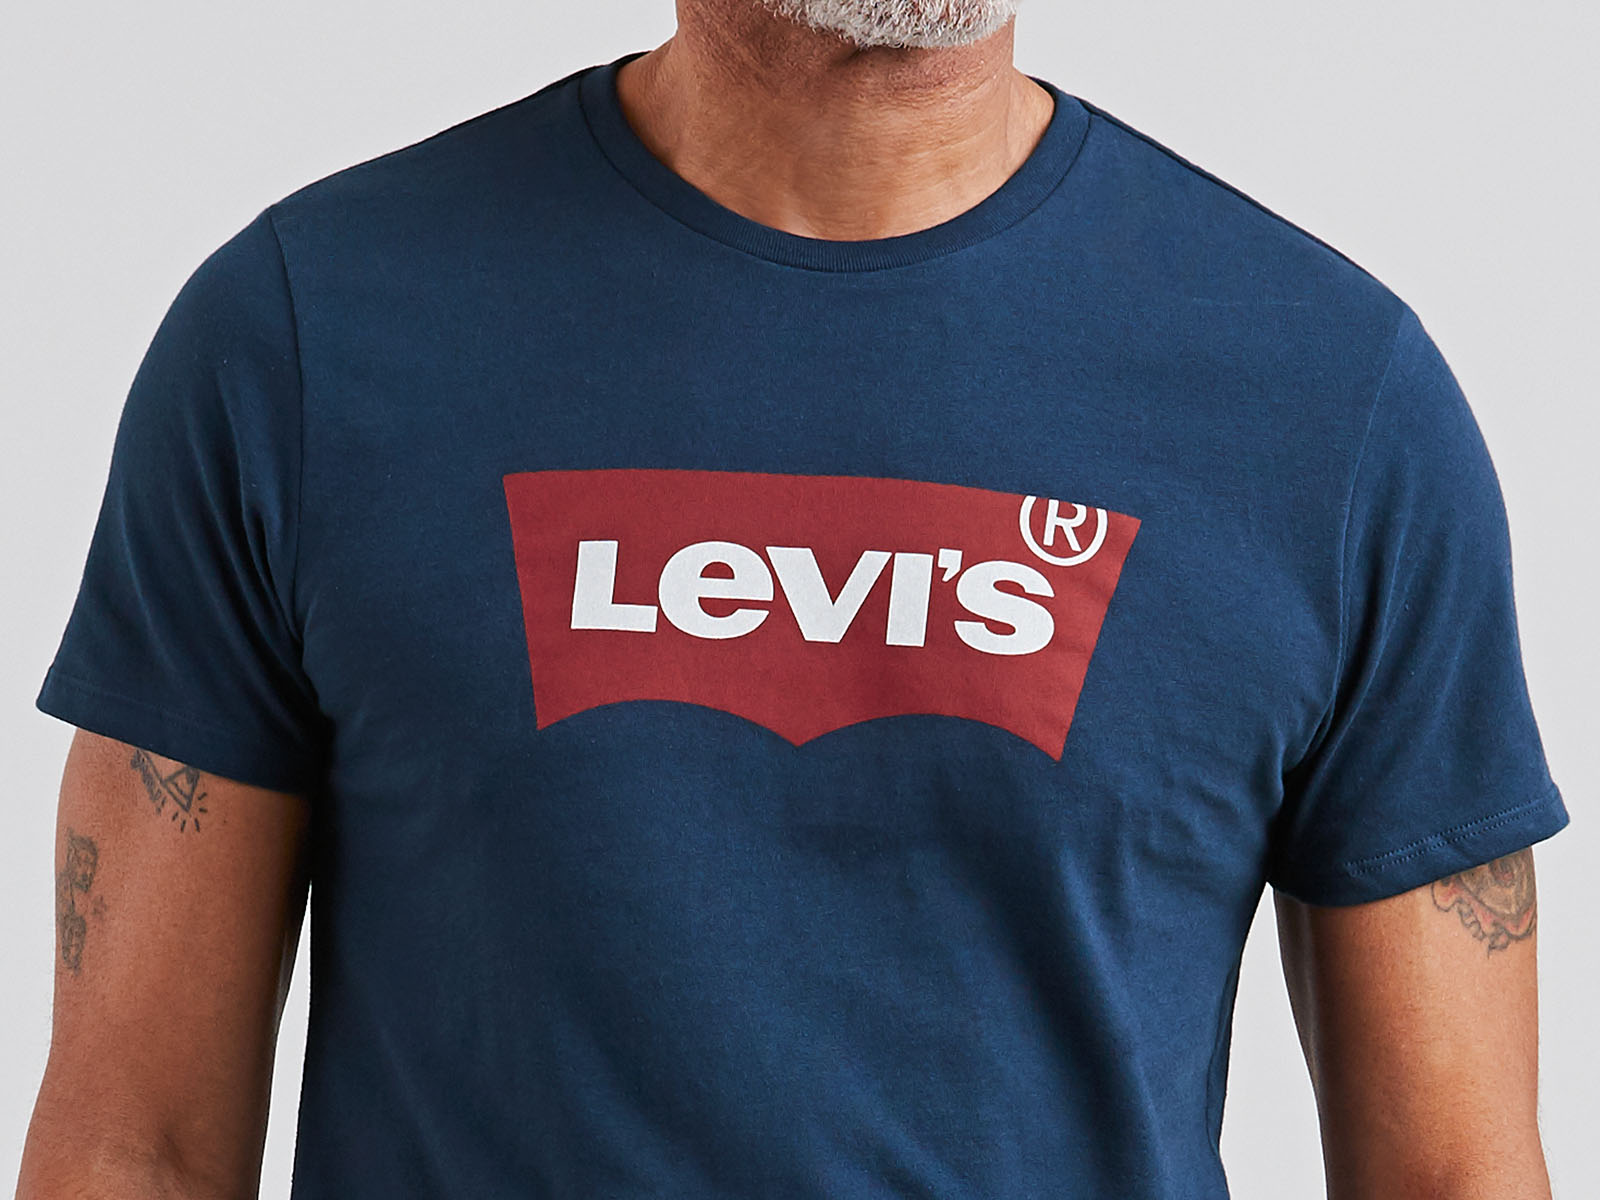 Samarreta de màniga curta d'home Levi's, model 17783-0139, color blau marí i batwing logo vermel - 3 - La Casa Dels Pantalons